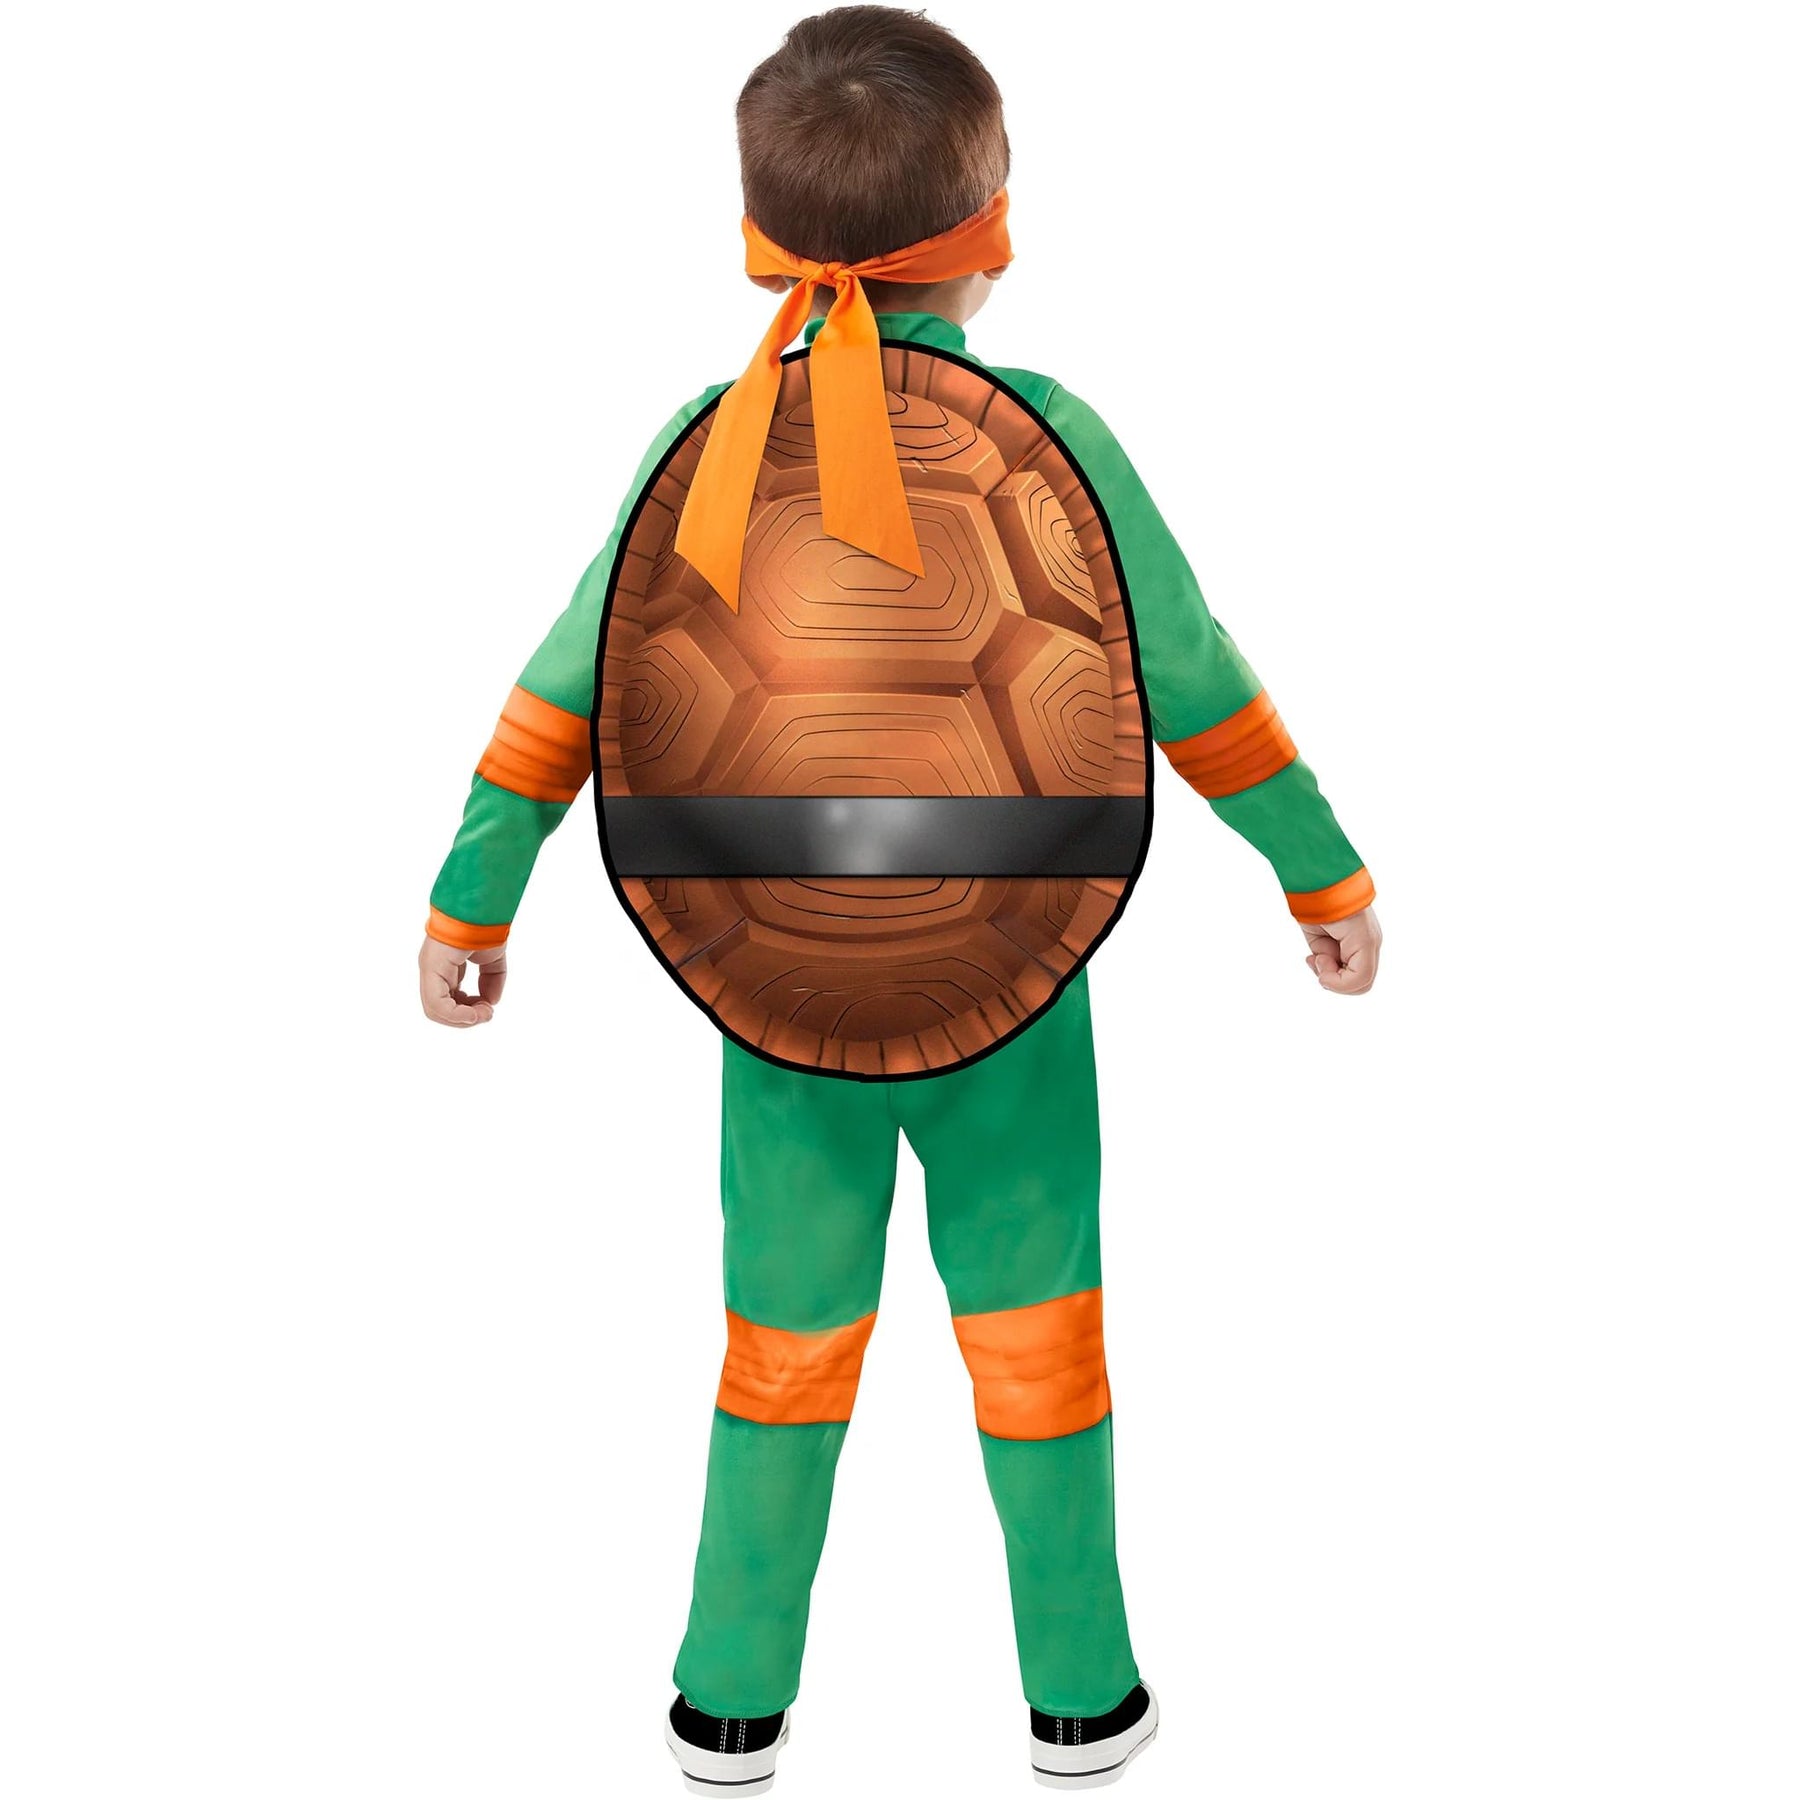 TMNT Michelangelo Movie Toddler Costume